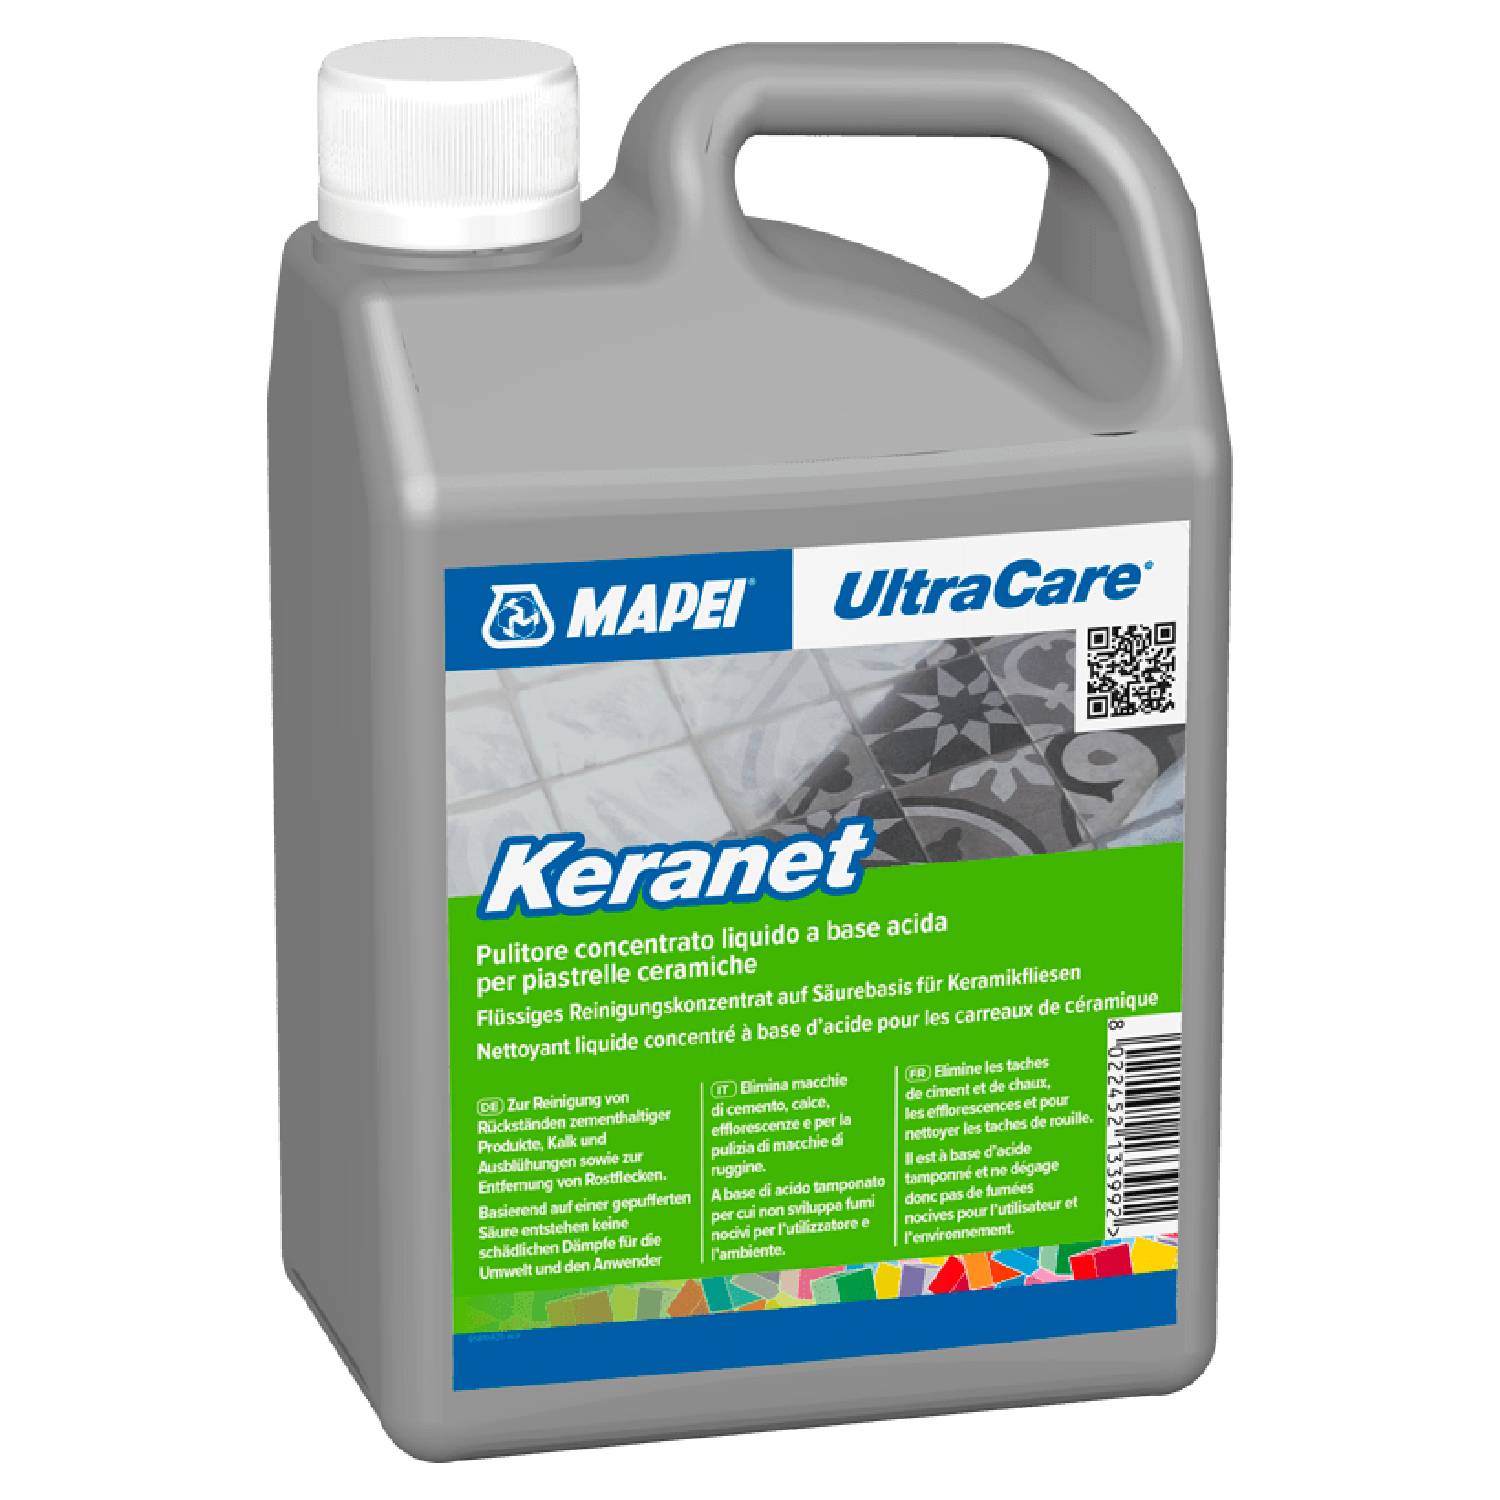 Detergente Concentrado Líquido de Base Ácida Mapei UltraCare Keranet Remoção de Resíduos Cimentícios - Transparente - Bidão 5 Litros